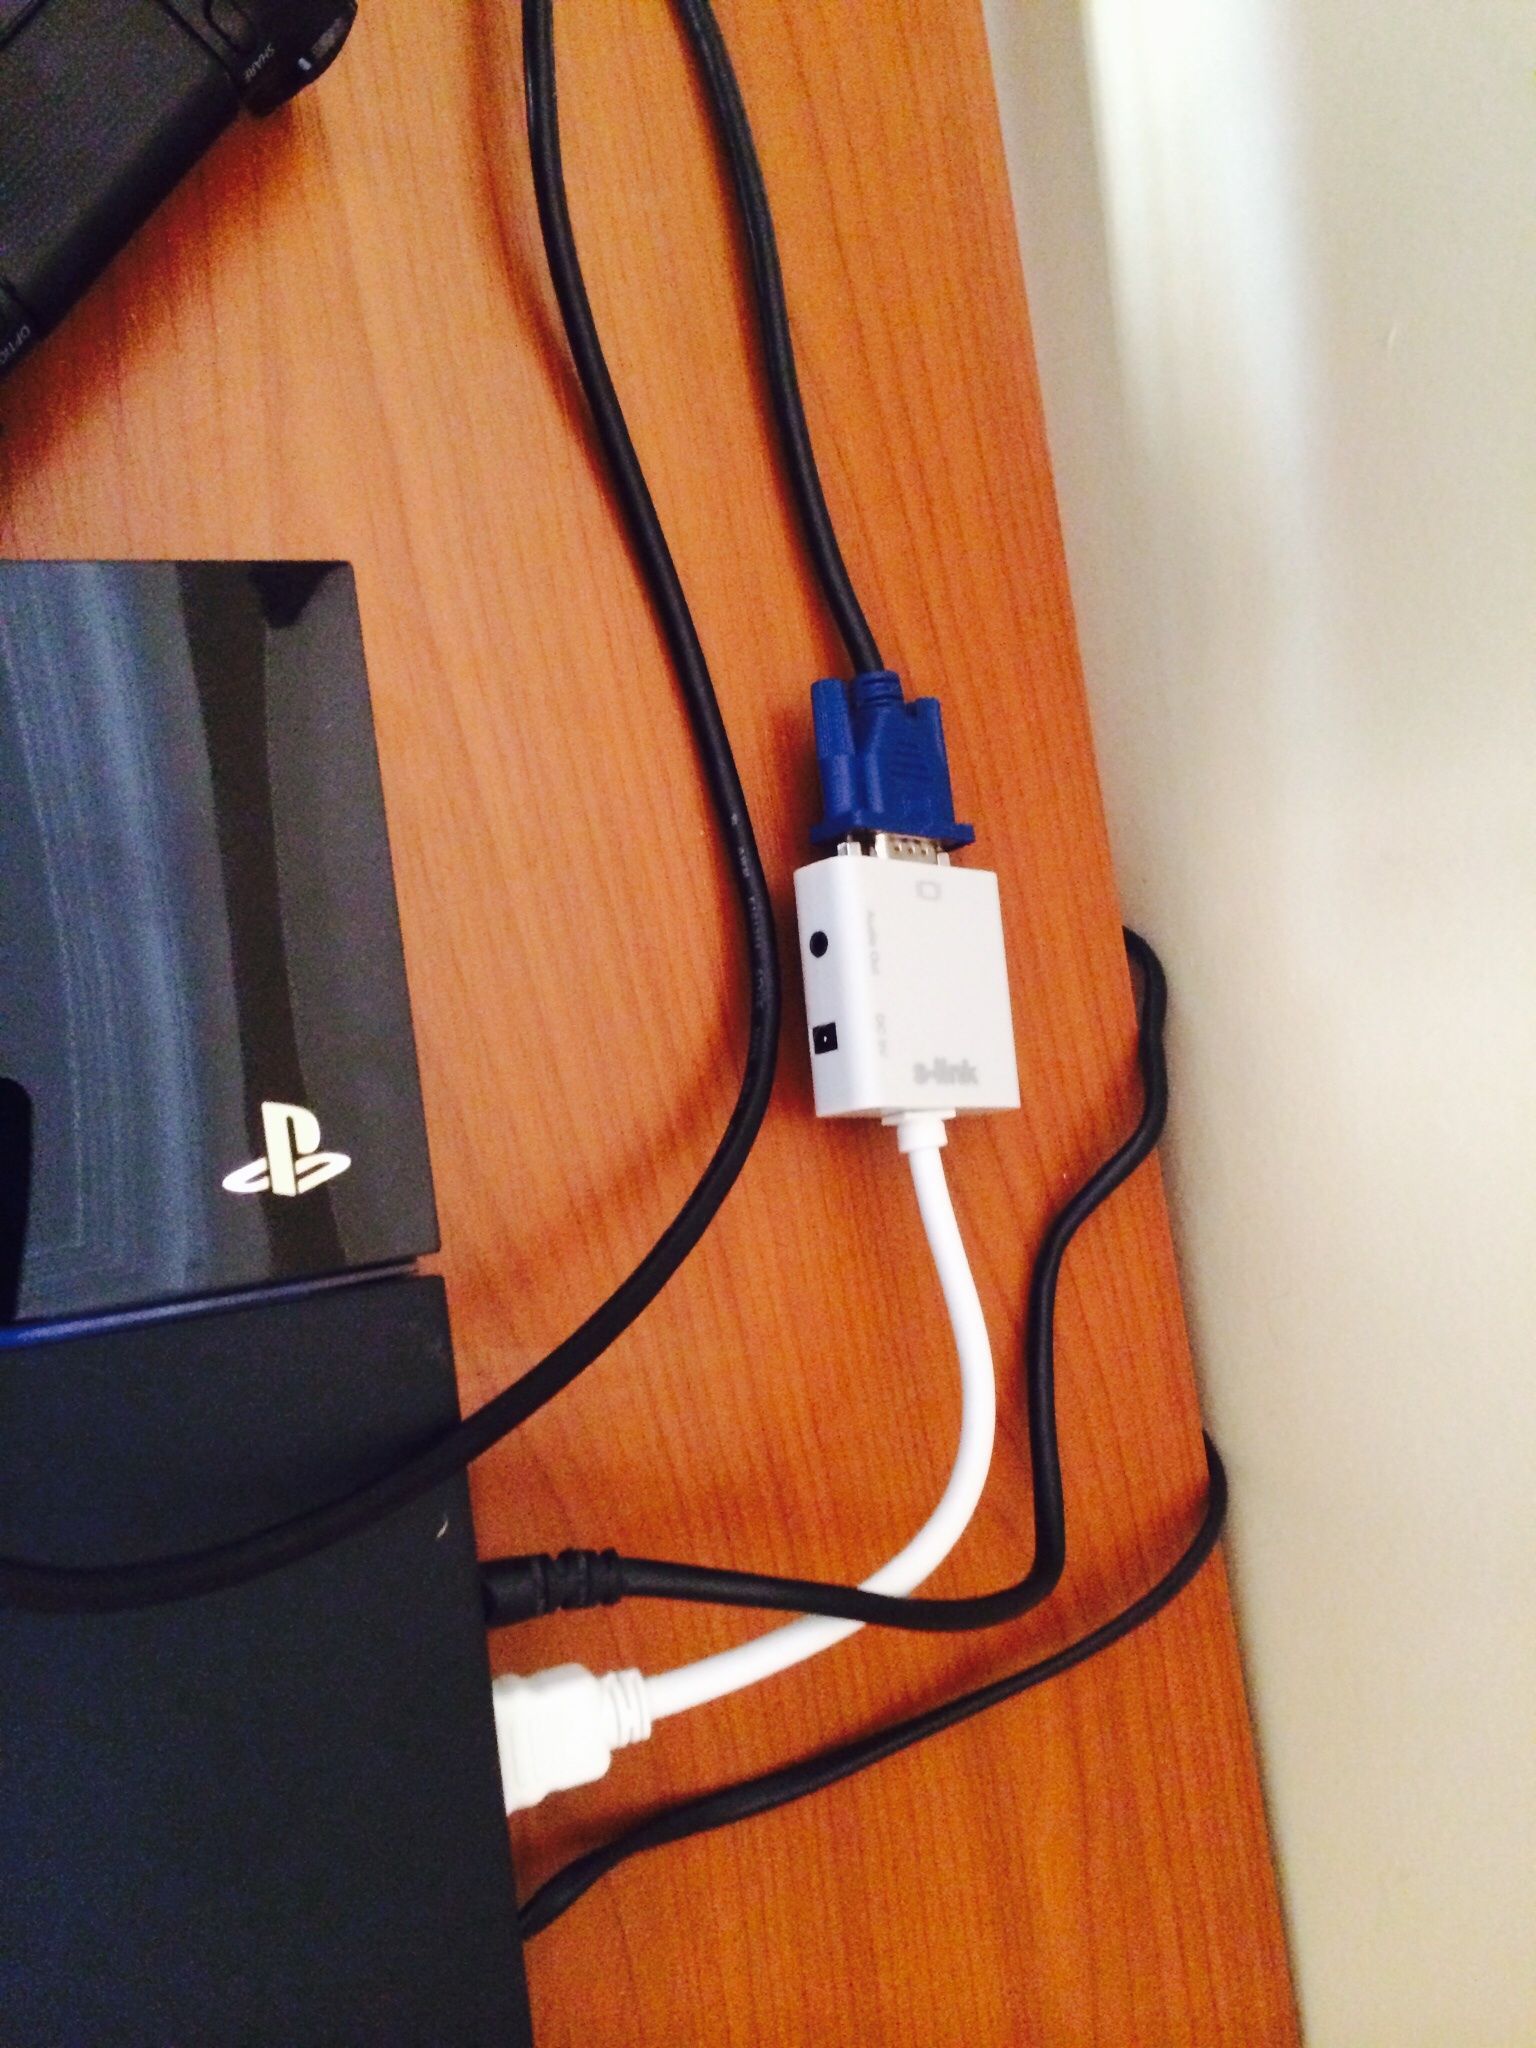 PS4 VGA Monitör Bağlantısında Görüntü Vermiyor | Technopat Sosyal